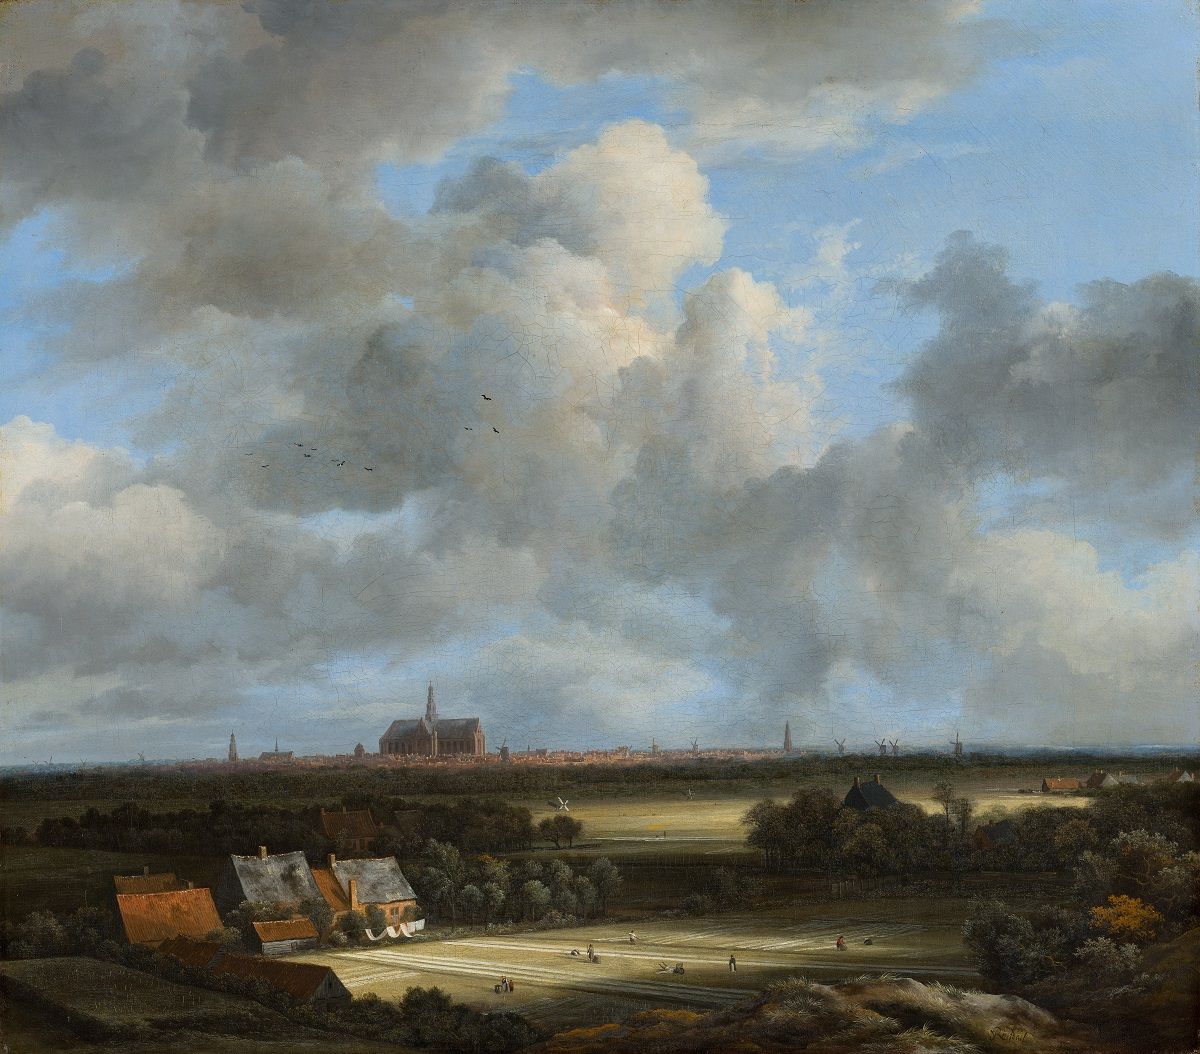 View of Dutch landscape